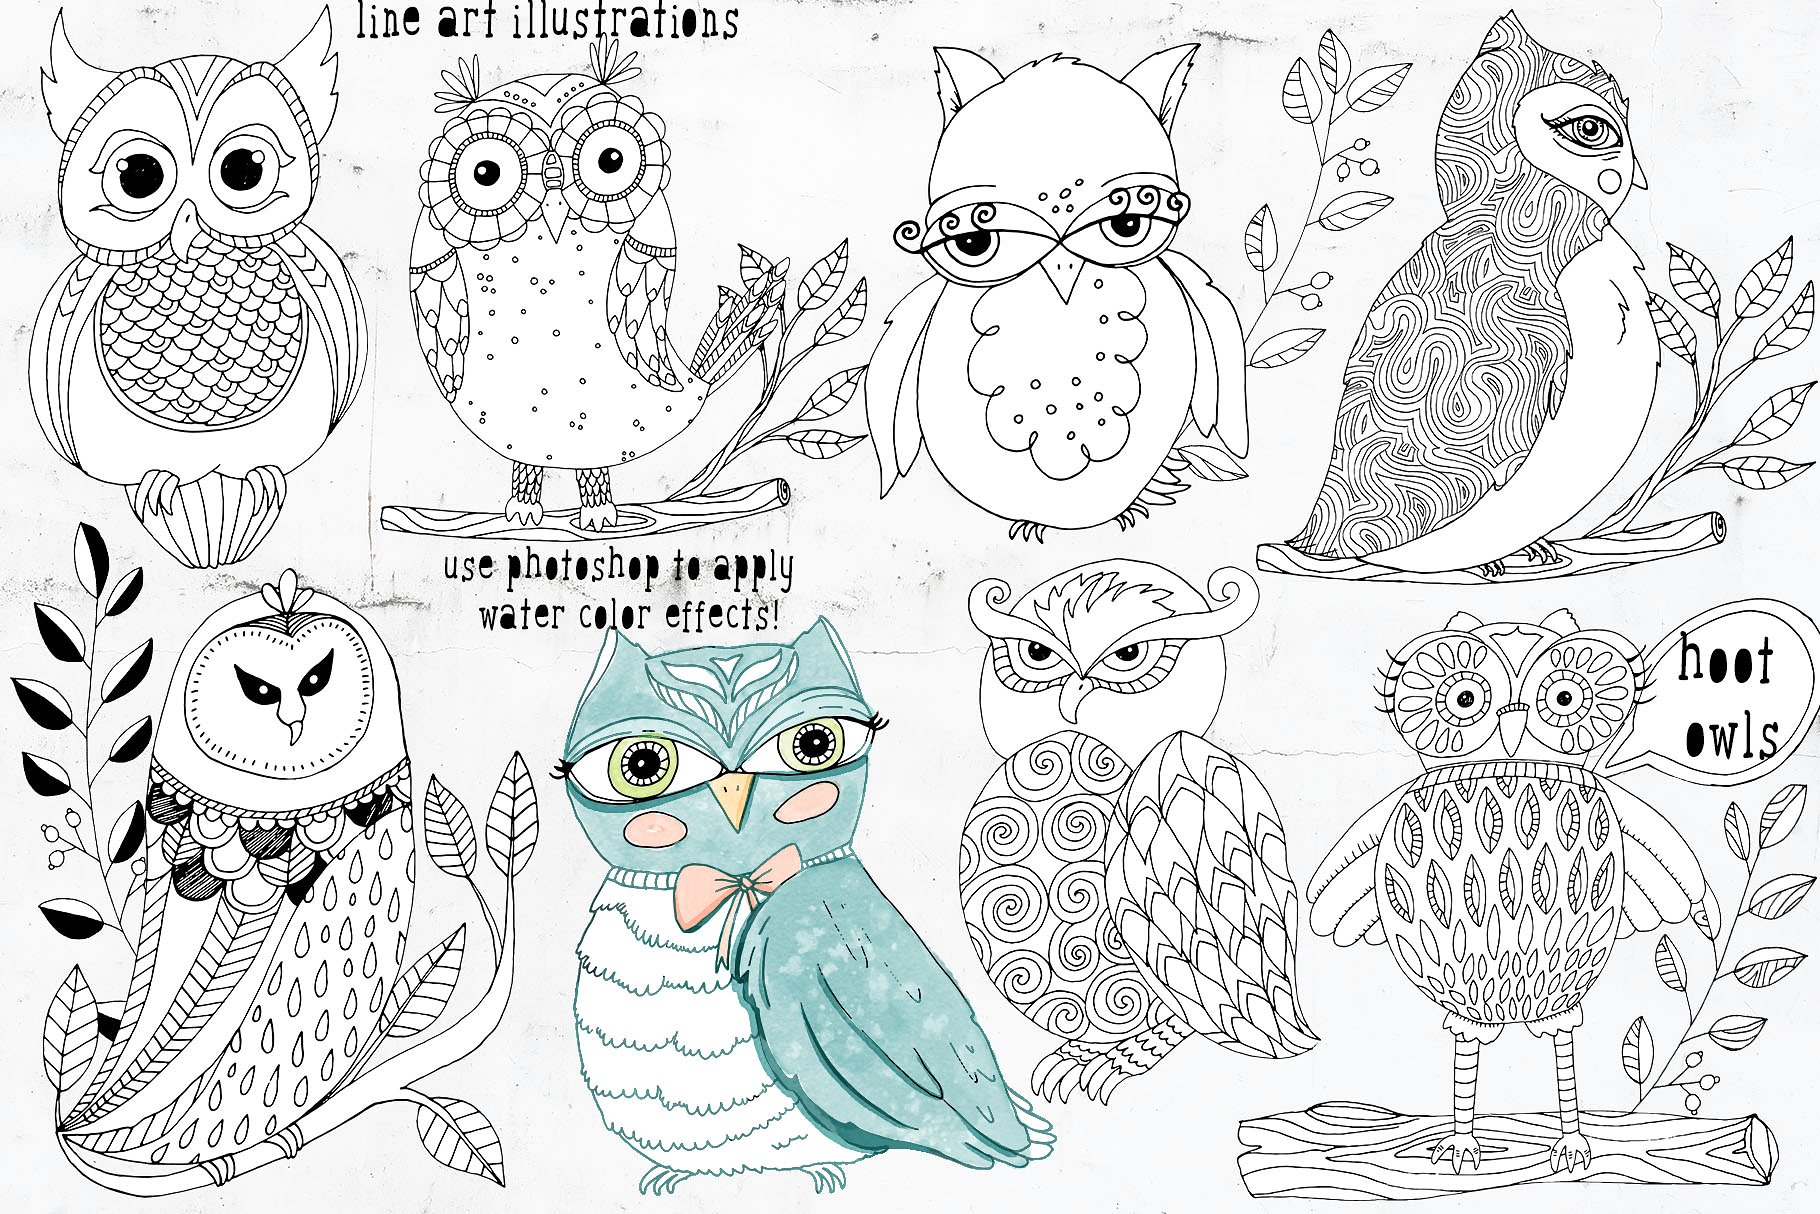 可爱猫头鹰矢量剪切画素材 Cute Owl Graphics Set插图(6)